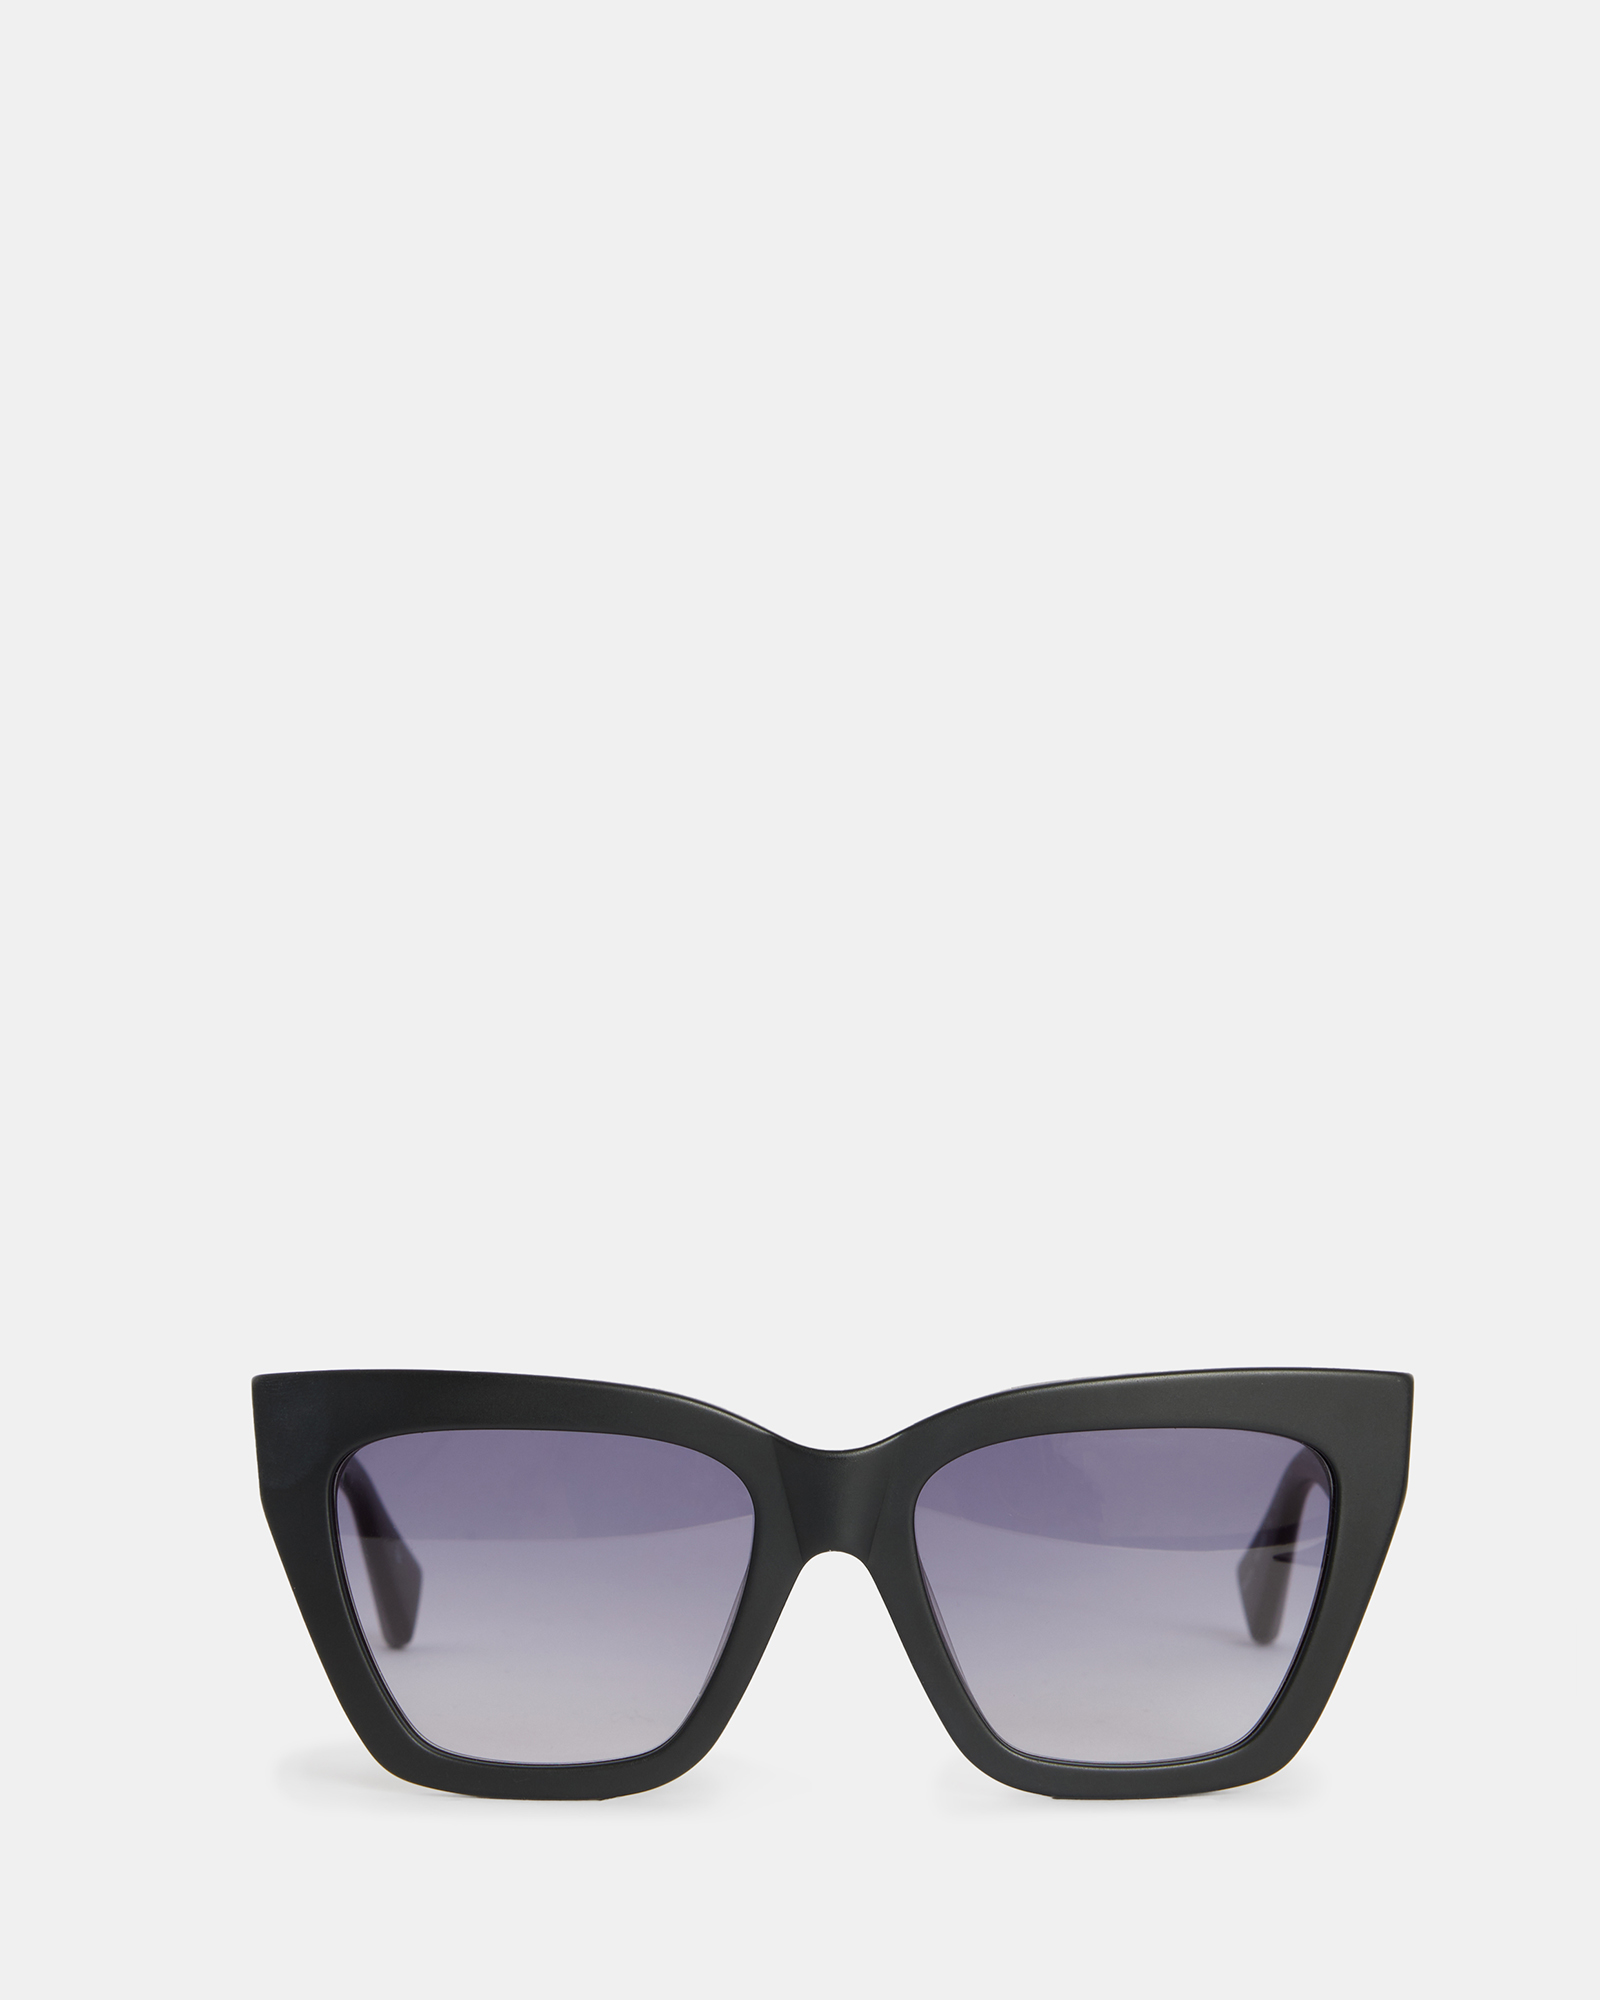 AllSaints Minerva Square Cat Eye Sunglasses,, MATTE BLACK